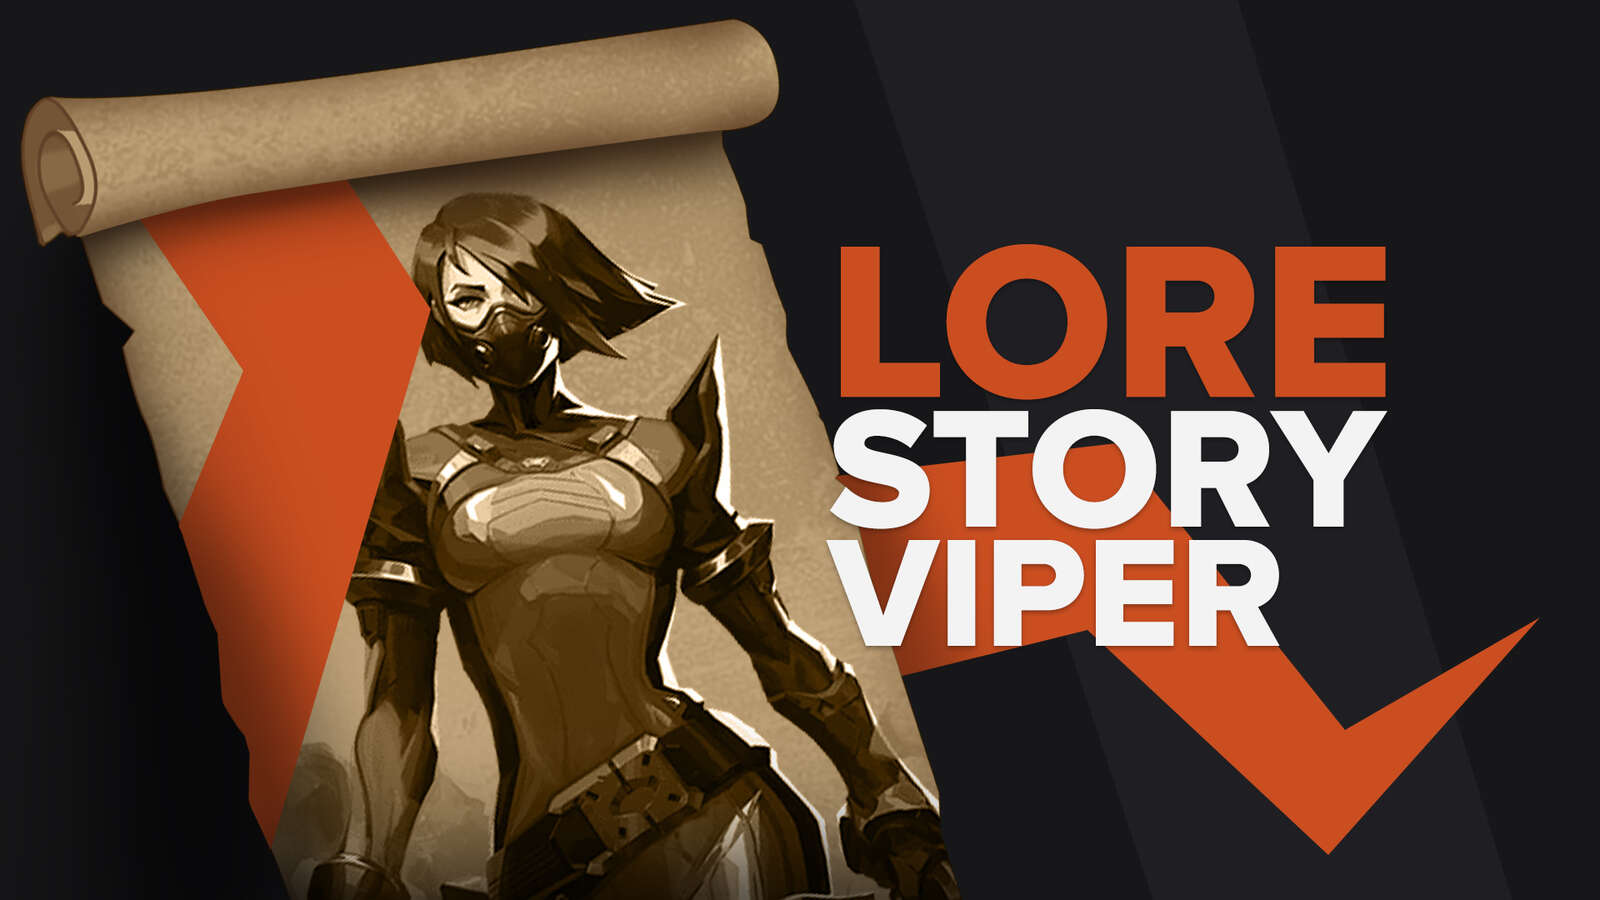 Valorant Lore Story Viper Explained